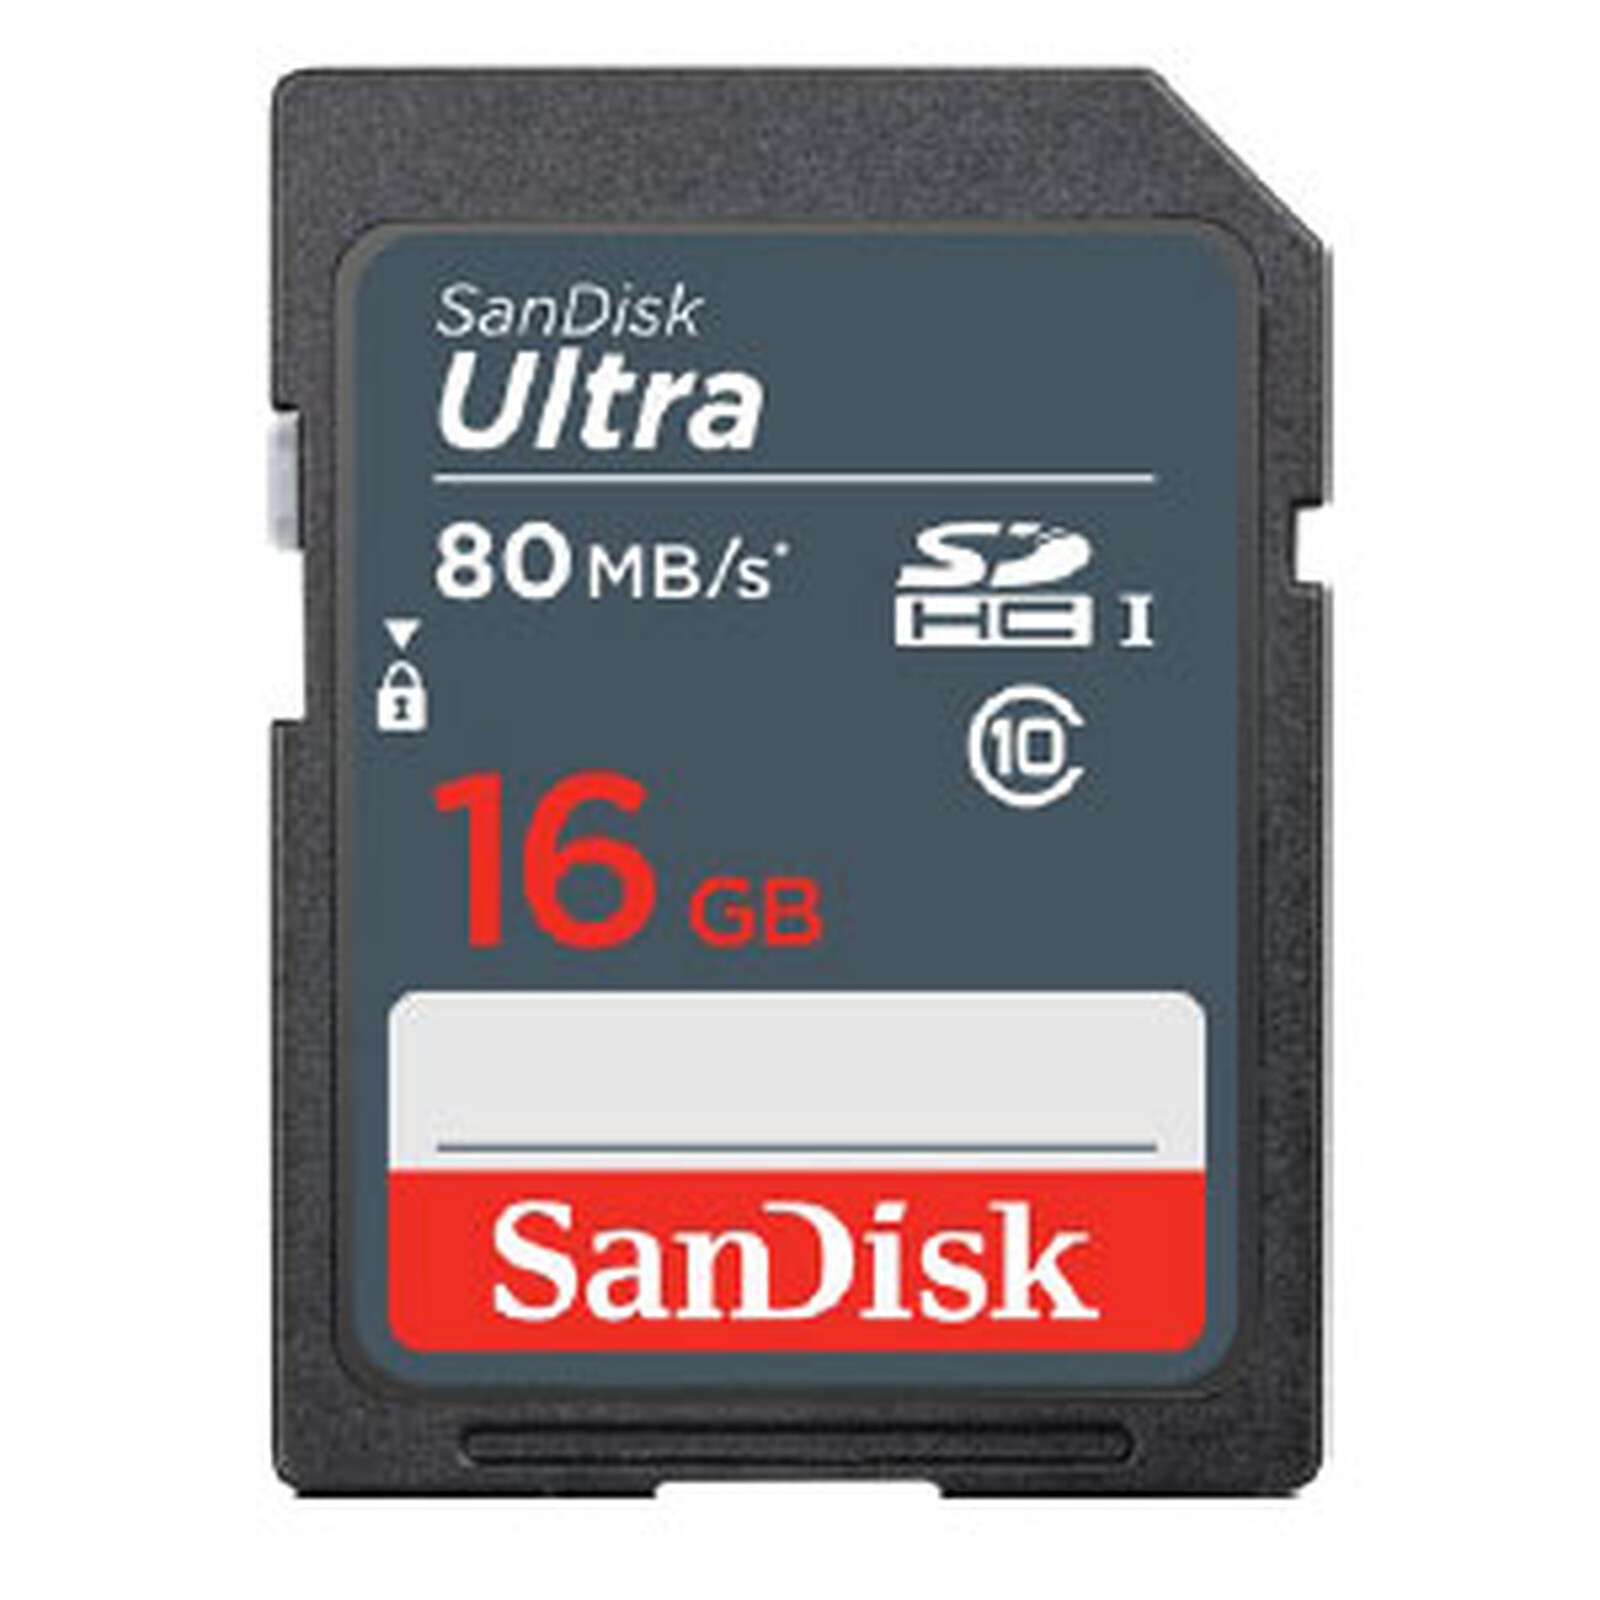 SanDisk Reader Card I-UHS SD - Lecteur carte mémoire - Garantie 3 ans LDLC